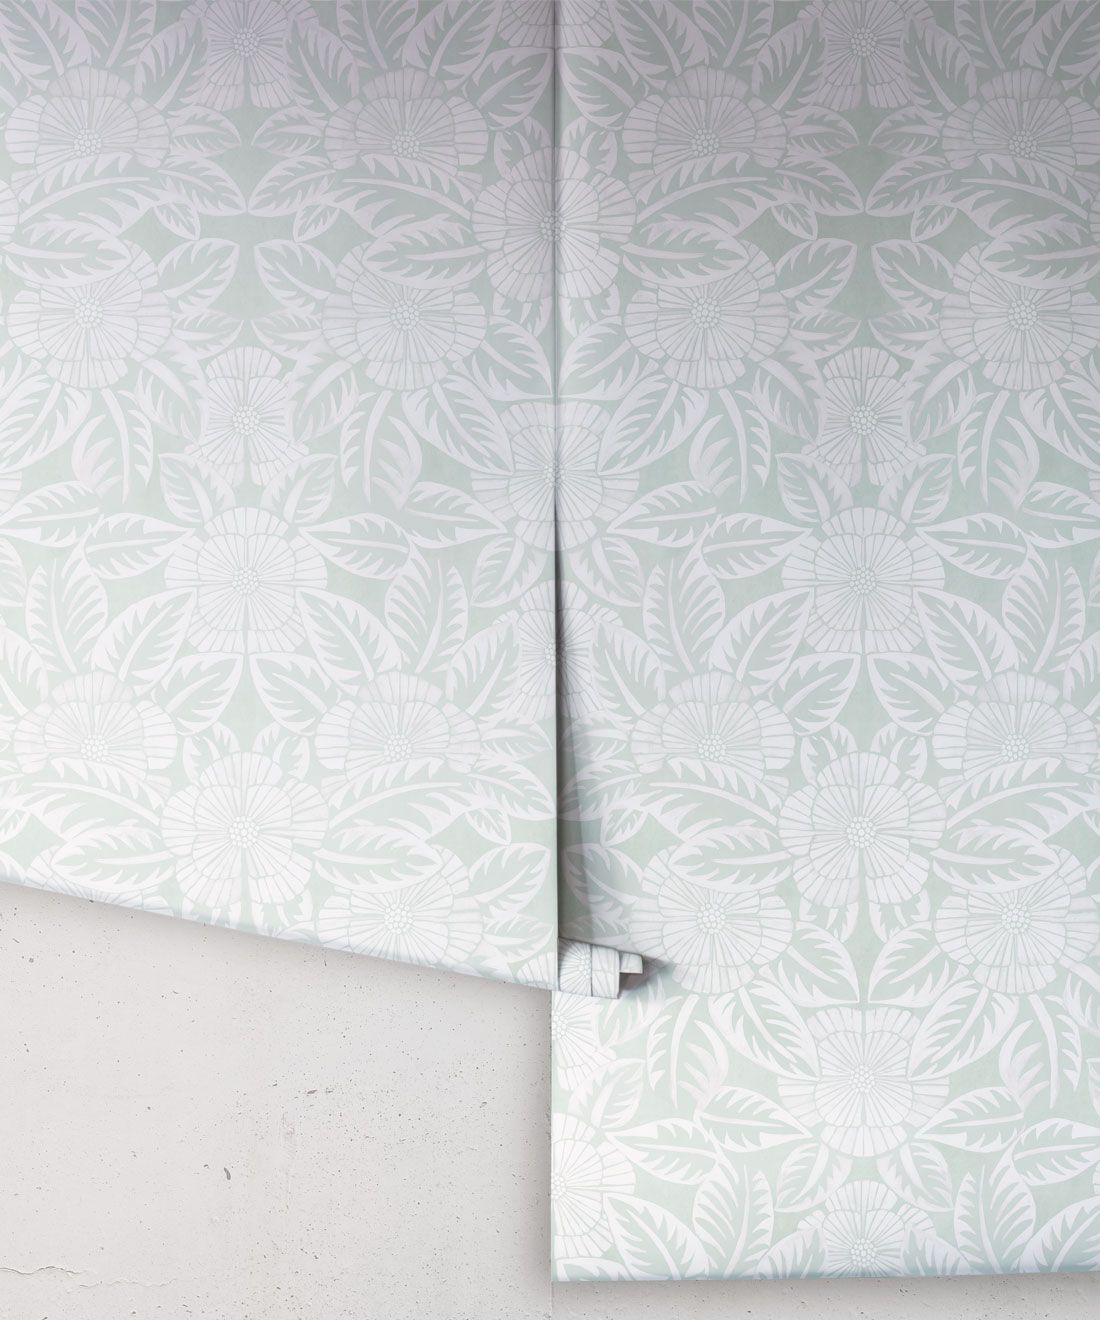 Calcutta Wallpaper • Flower and Leaf Motif Design • Ethnic Wallpaper • Aqua Wallpaper • Rolls